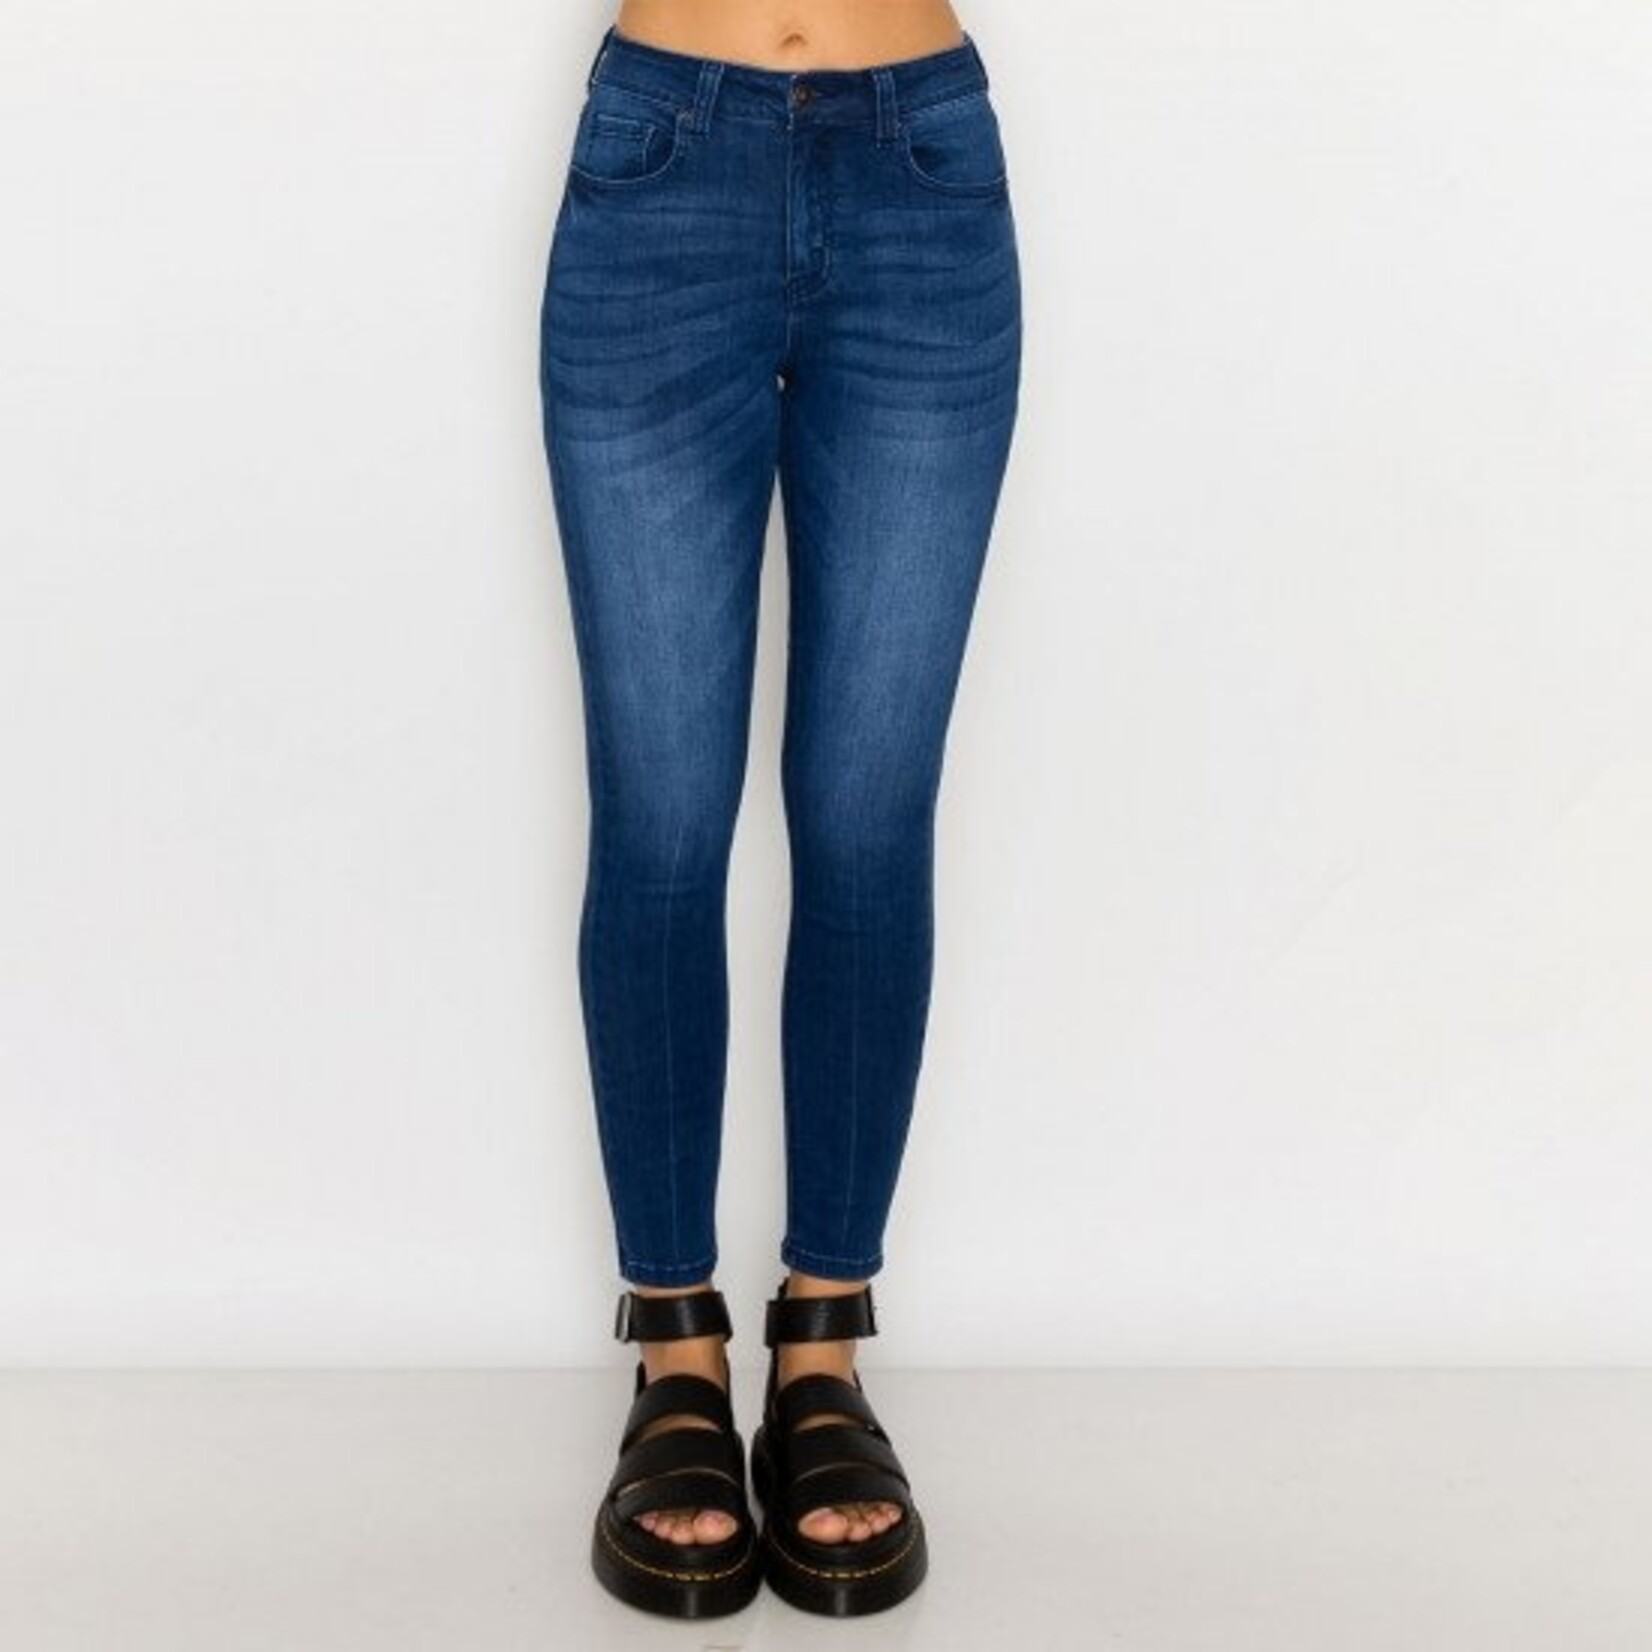 Wax Jeans Wax Jean - Modal Fabric Basic Skinny Jean - 90238